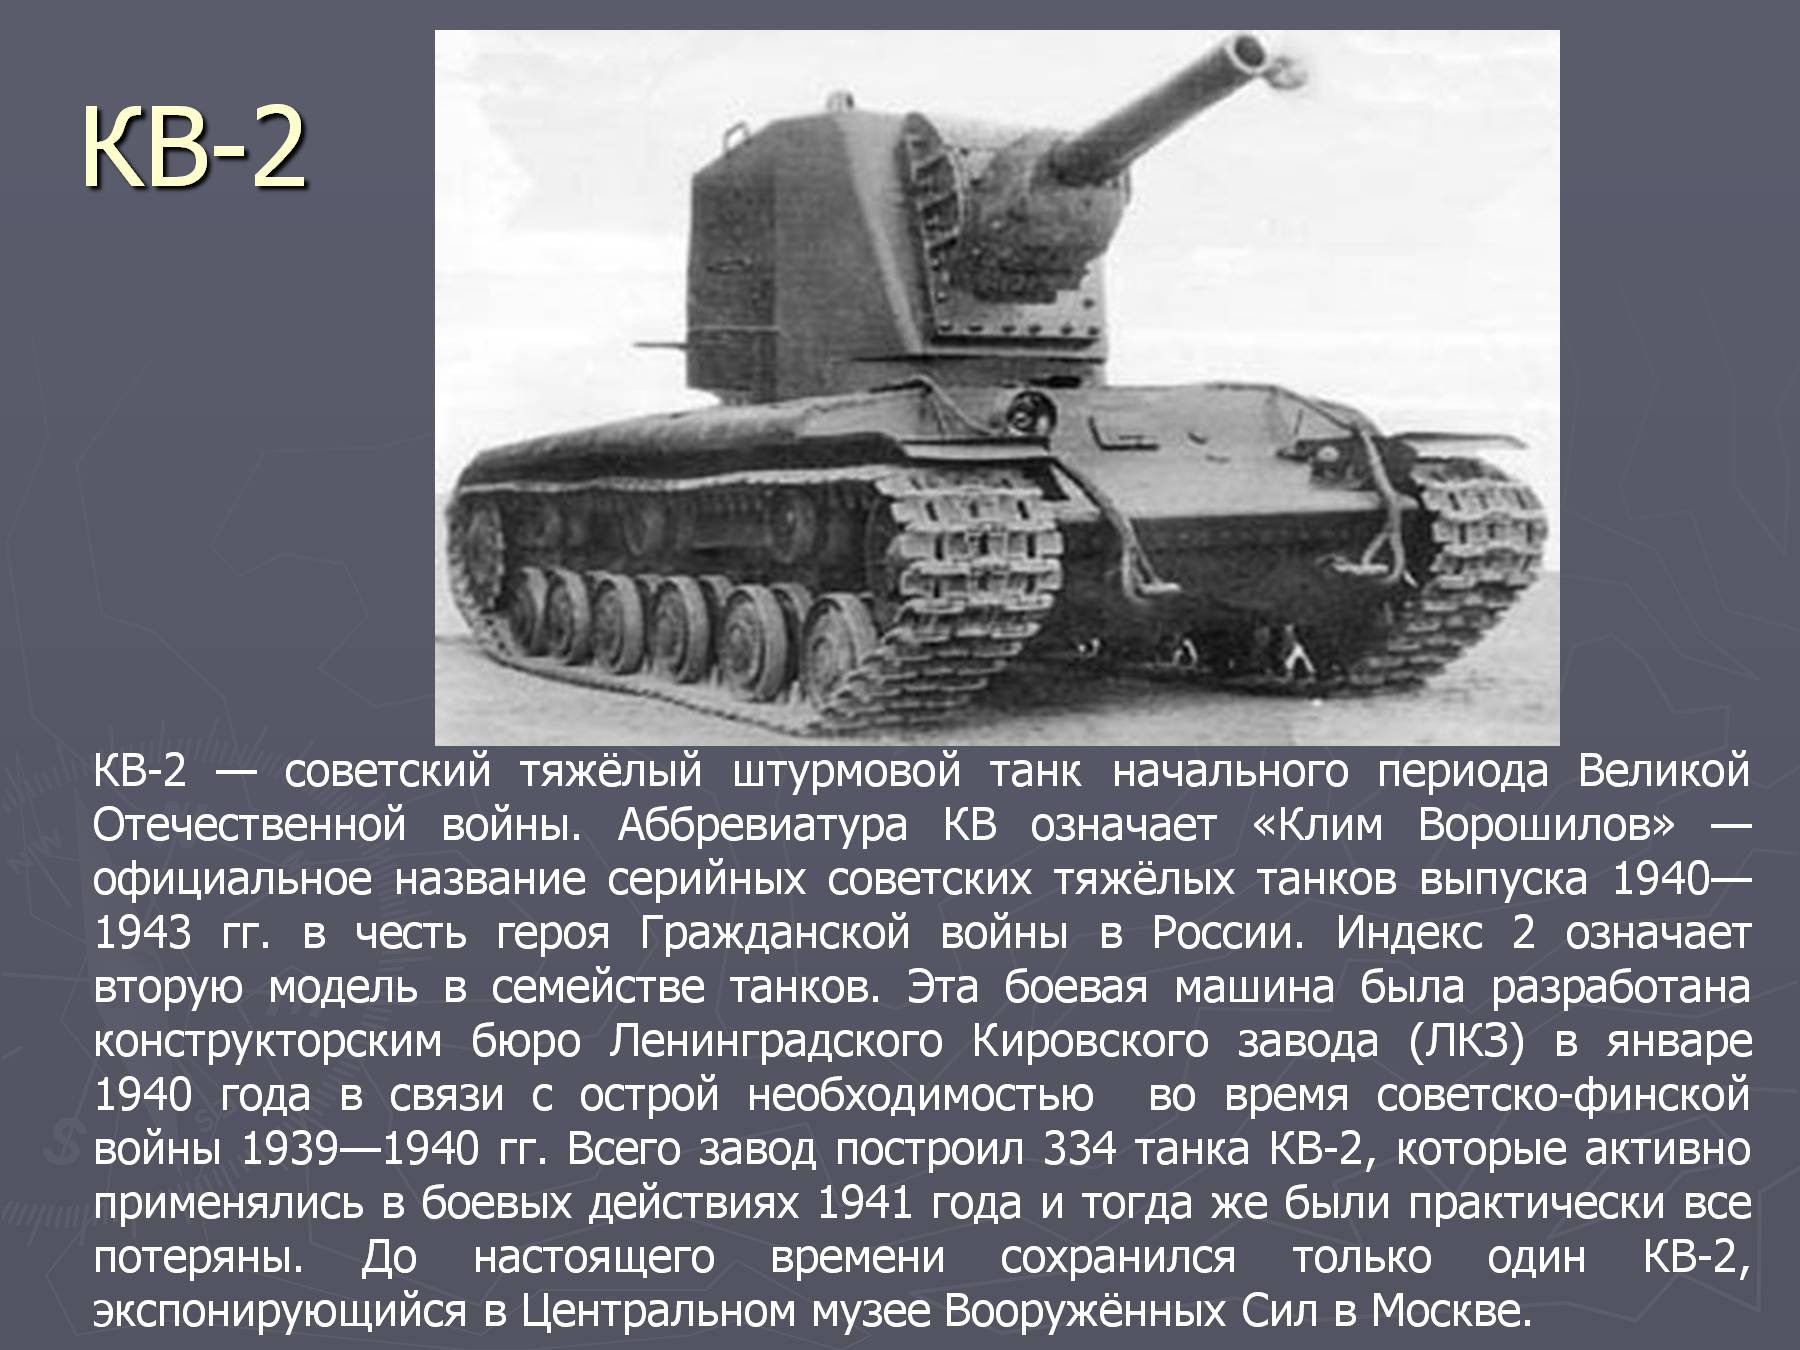 Танк кв 2 участвовал в Великой Отечественной войне